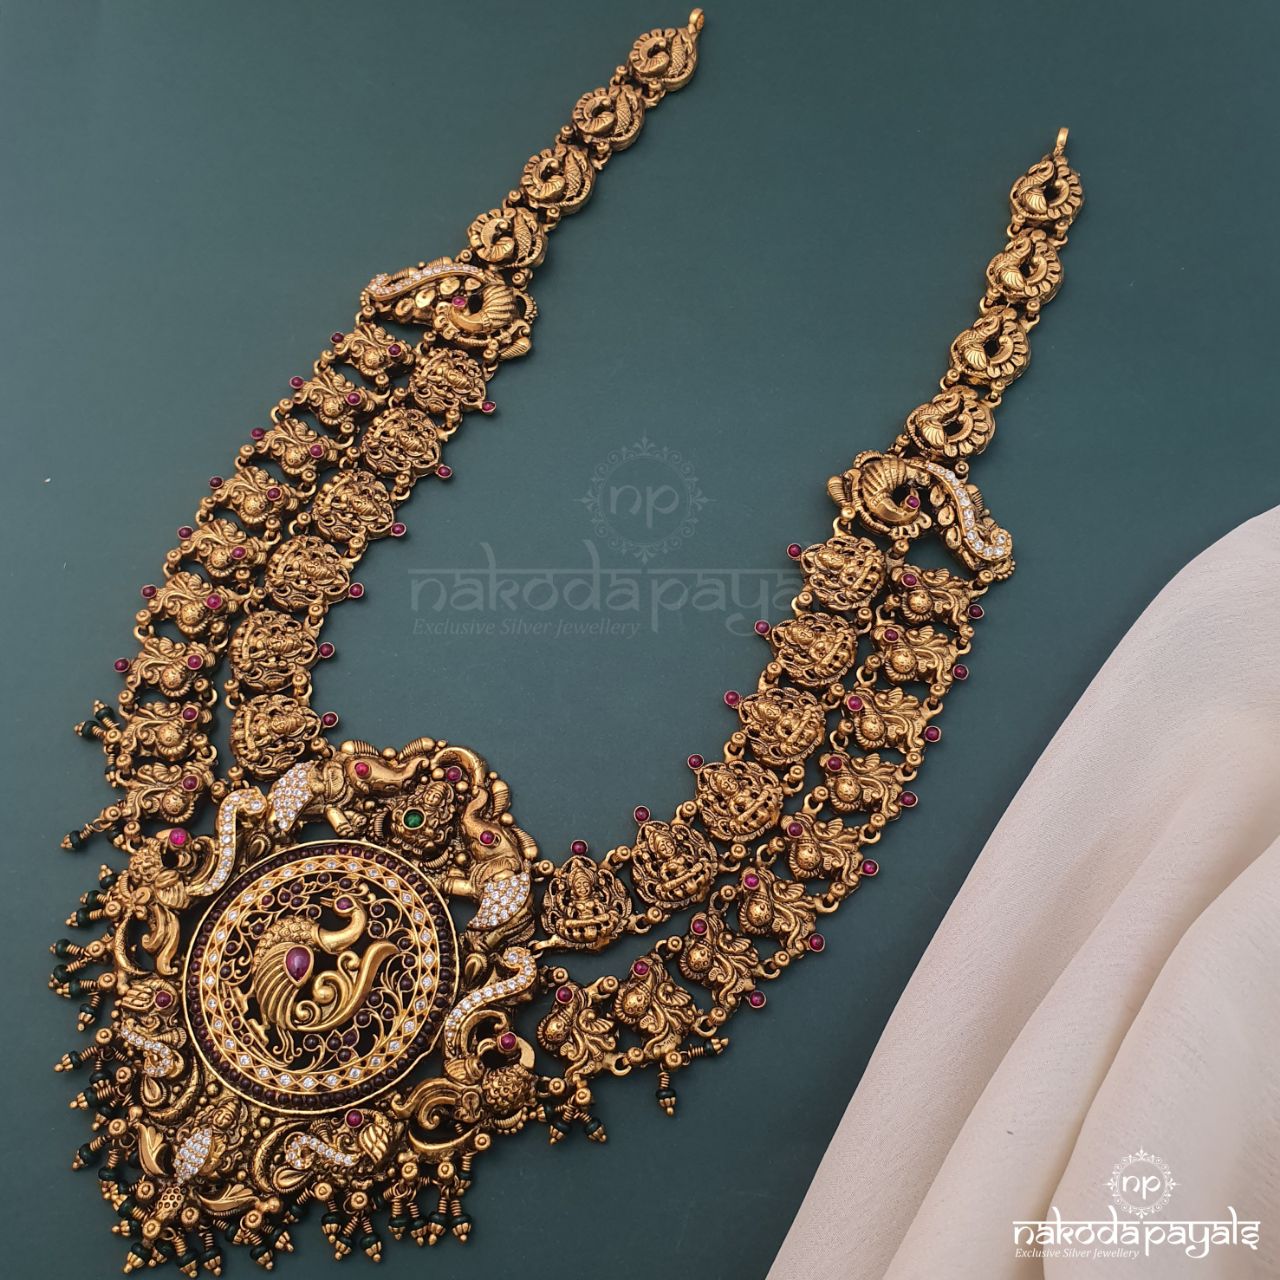 Grand Wide Lakshmi Peacock Neckpiece